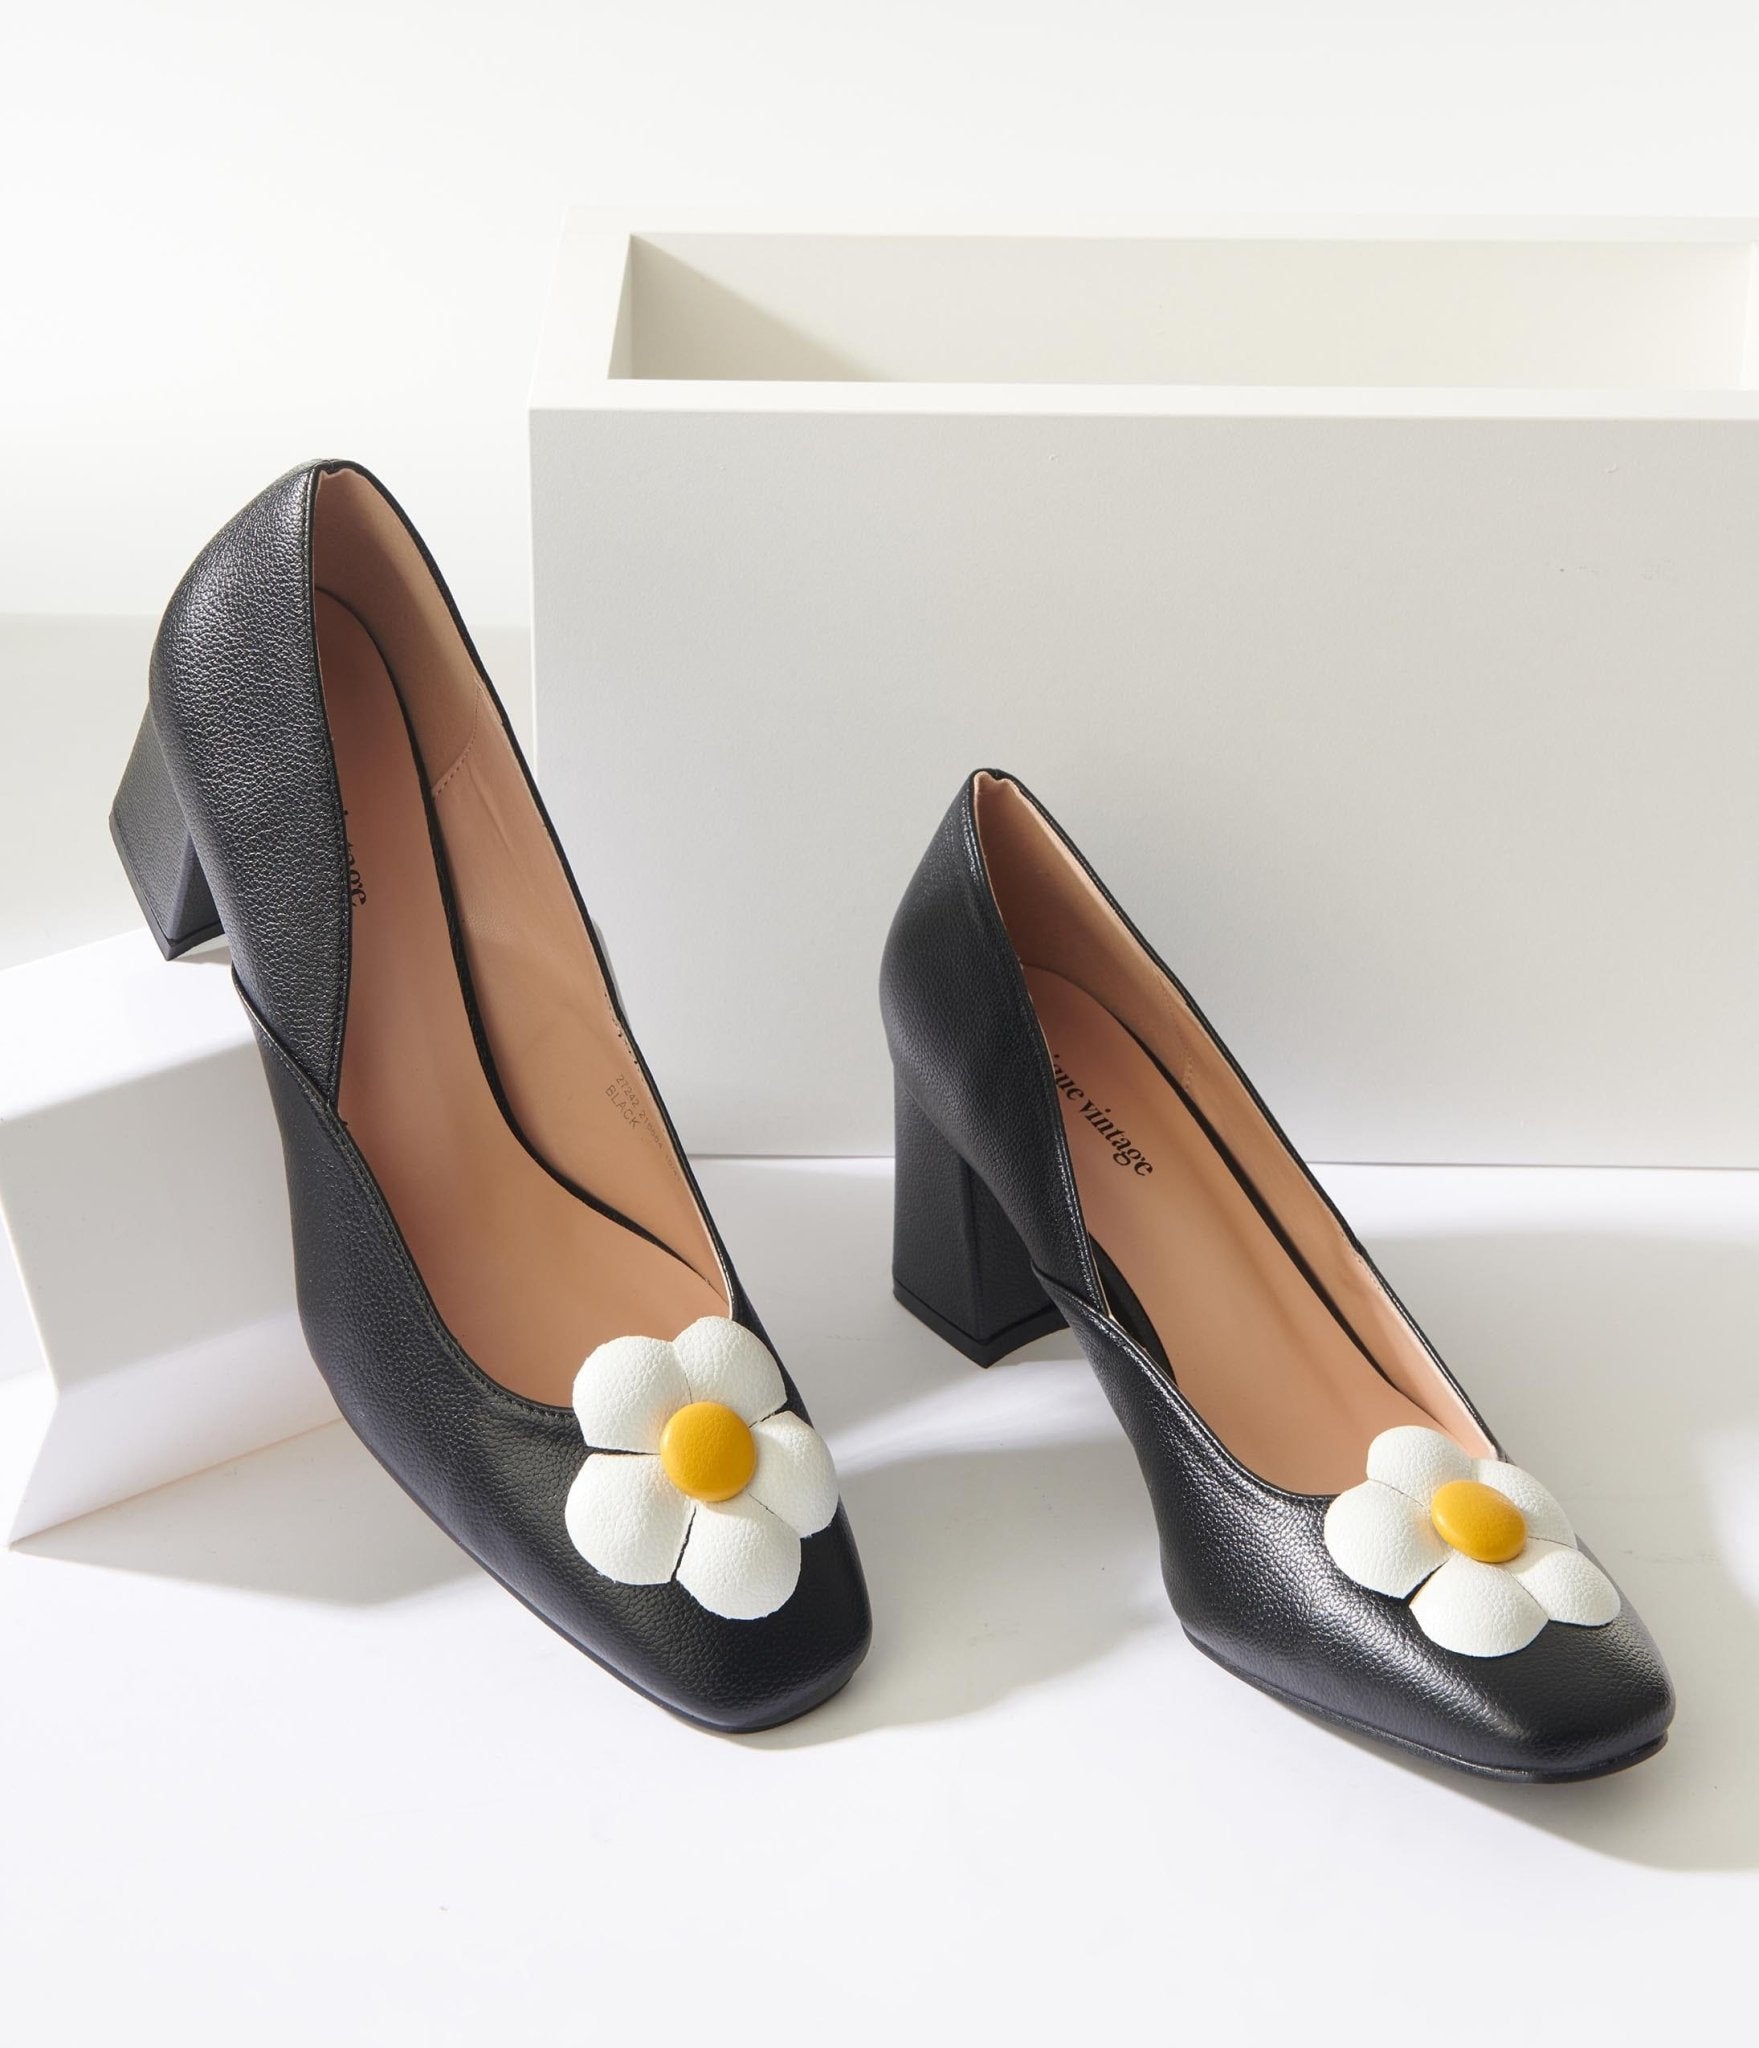 Retro Shoes – Women’s Heels, Flats & Sneakers Unique Vintage Black Daisy Pumps $68.00 AT vintagedancer.com